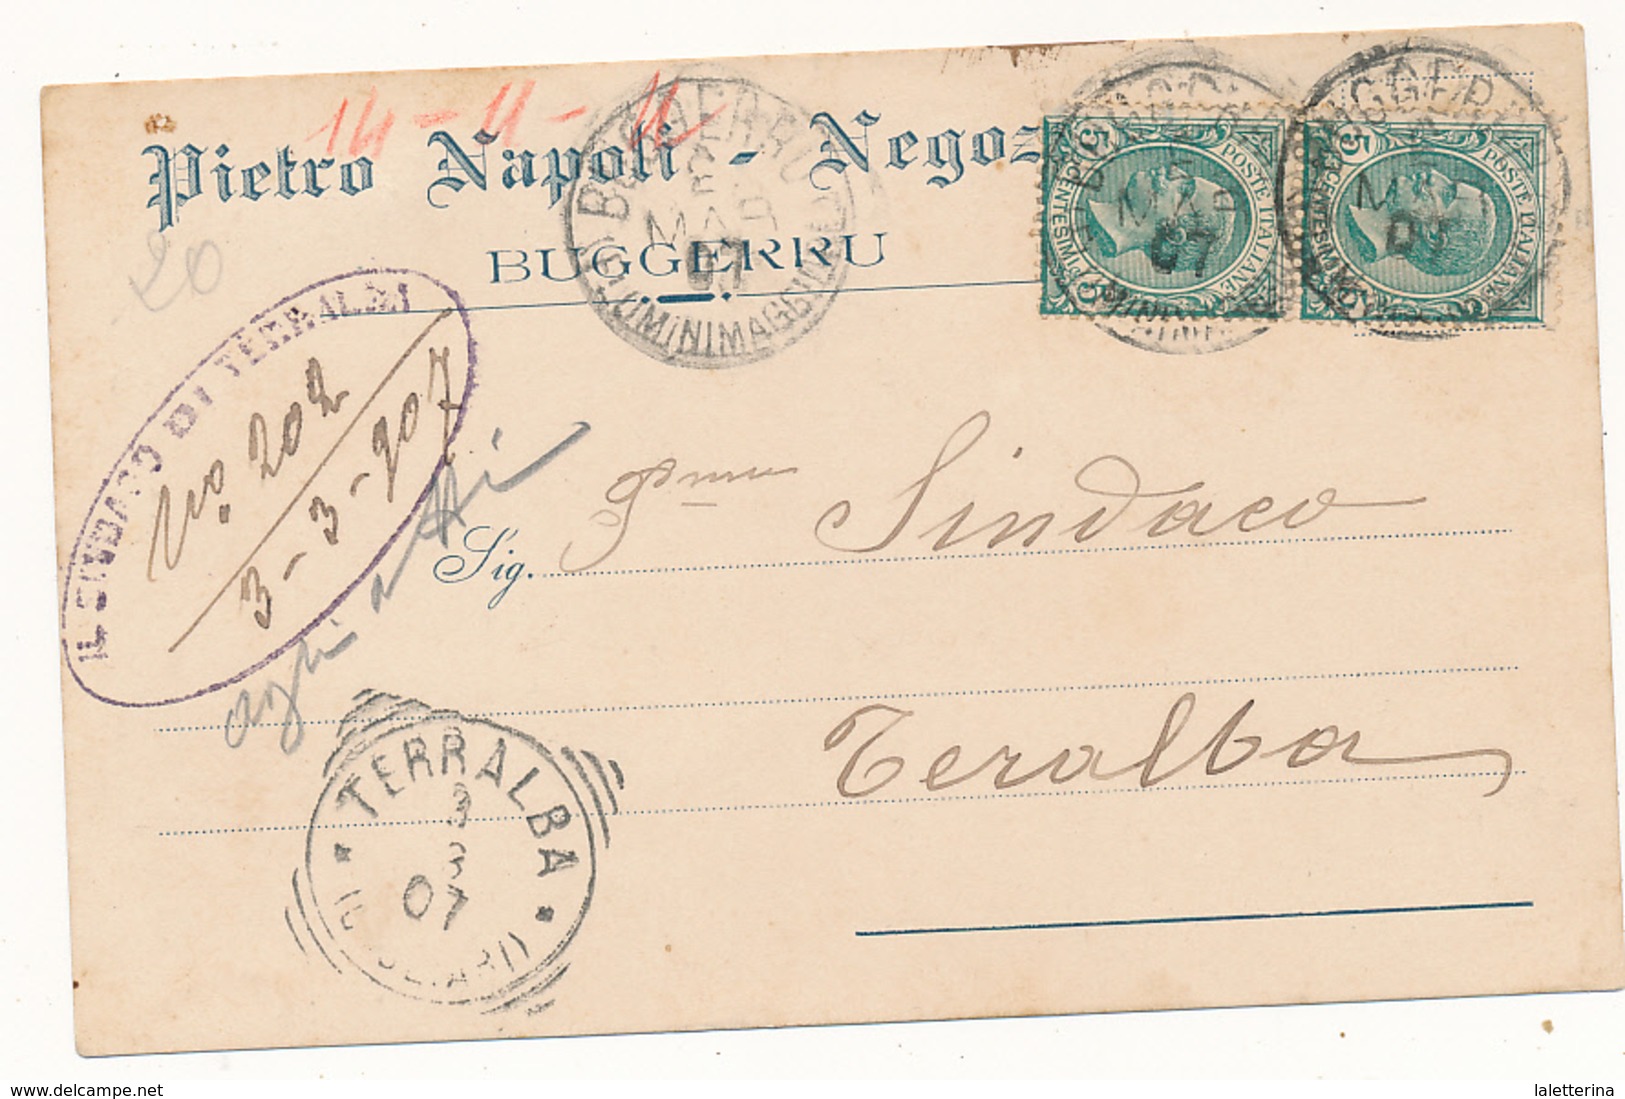 1907 SARDEGNA BUGGERRU (FLUMINIMAGGIORE) CERCHIO GRANDE SU CARTOLINA COMMERCIALE NEGOZIANTE - Storia Postale